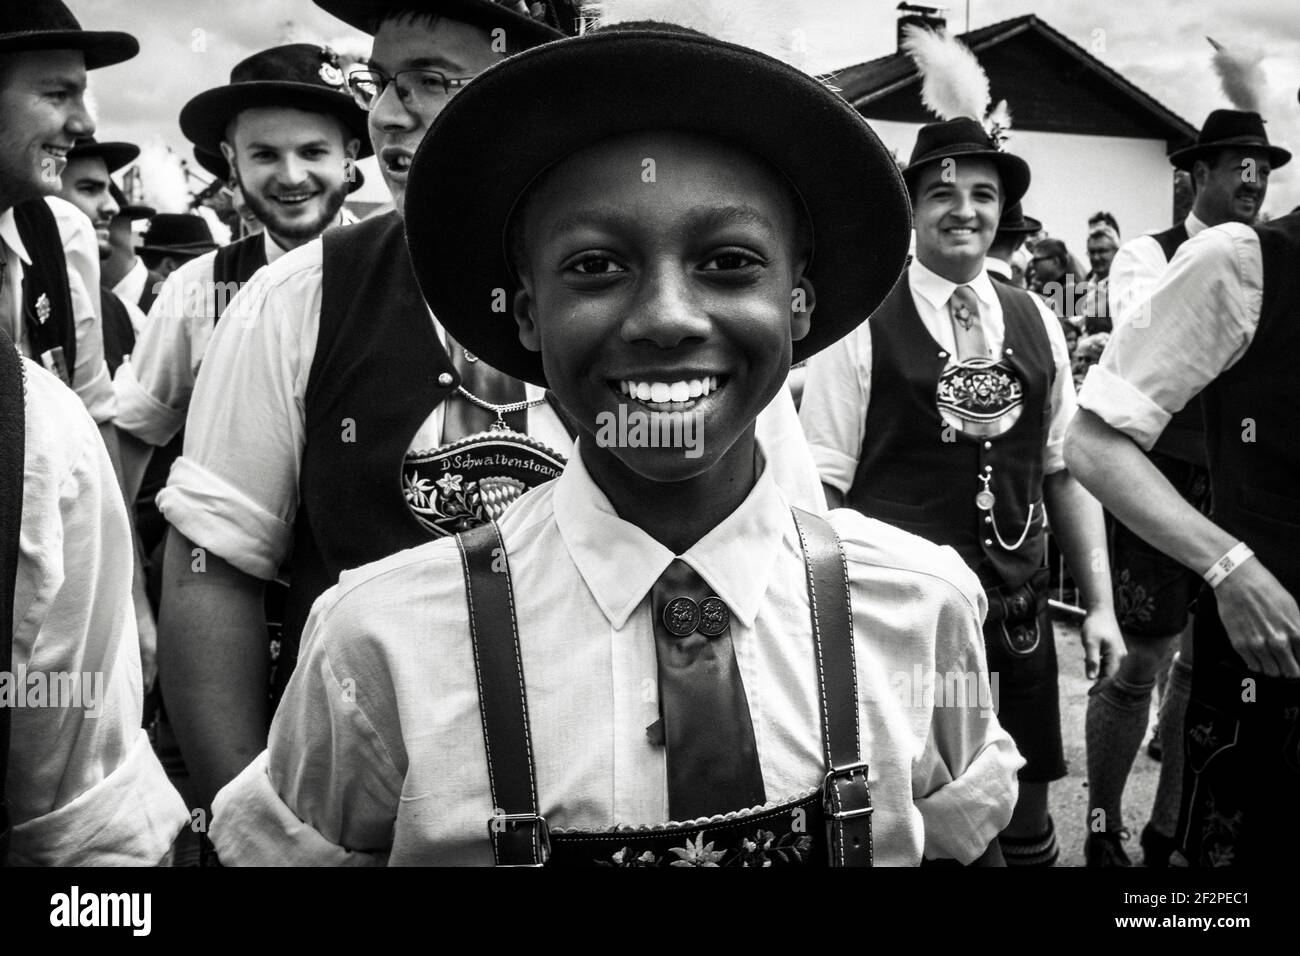 Deutschland, Bayern, Antdorf, Festwoche des Trachtenvereins. Lachender farbiger Junge eines traditionellen Kostümblubs. Stockfoto